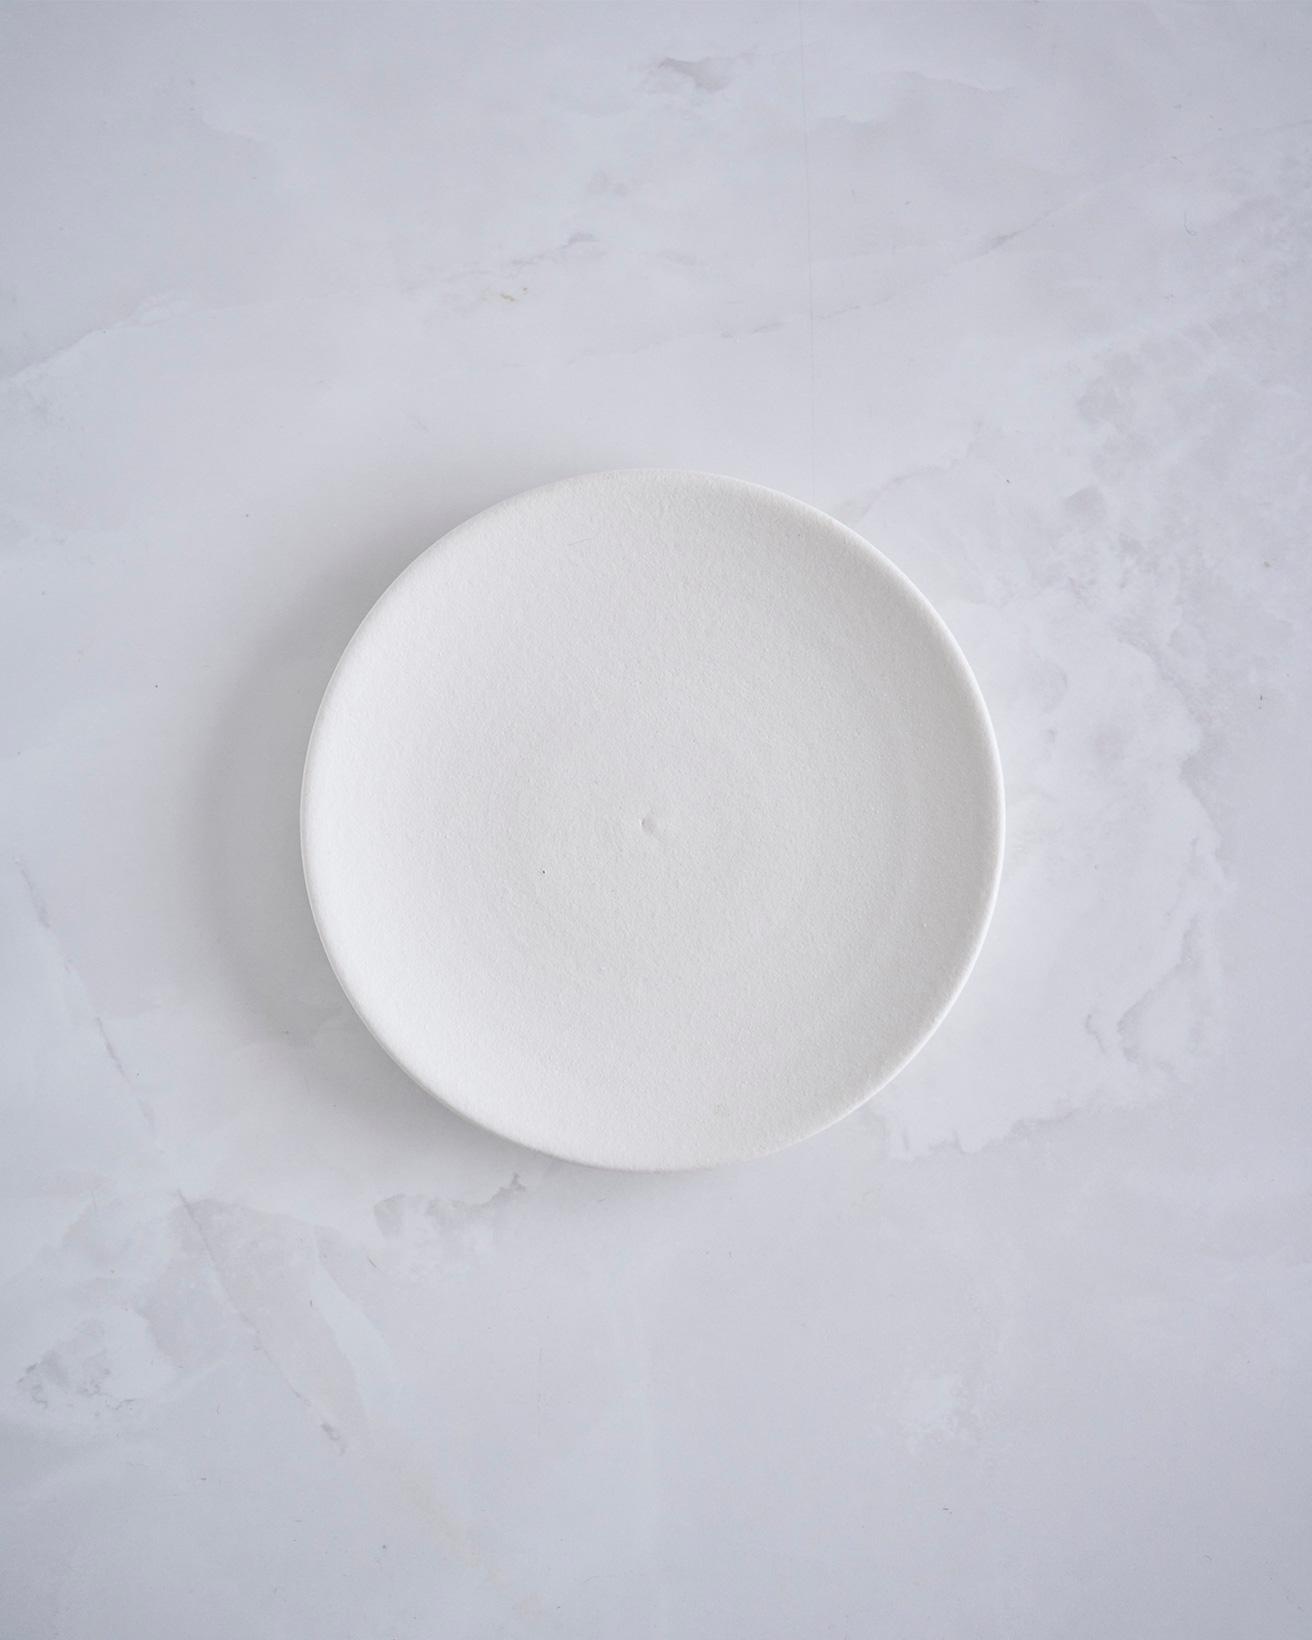 青山の〈Found muji〉で購入した信楽焼のお皿です。粉引のざらっとした感じで、白が生成りっぽくない本当の真っ白。窯元を見学したときに見る、釉薬をかける前の皿のようなニュートラルさがありますね。